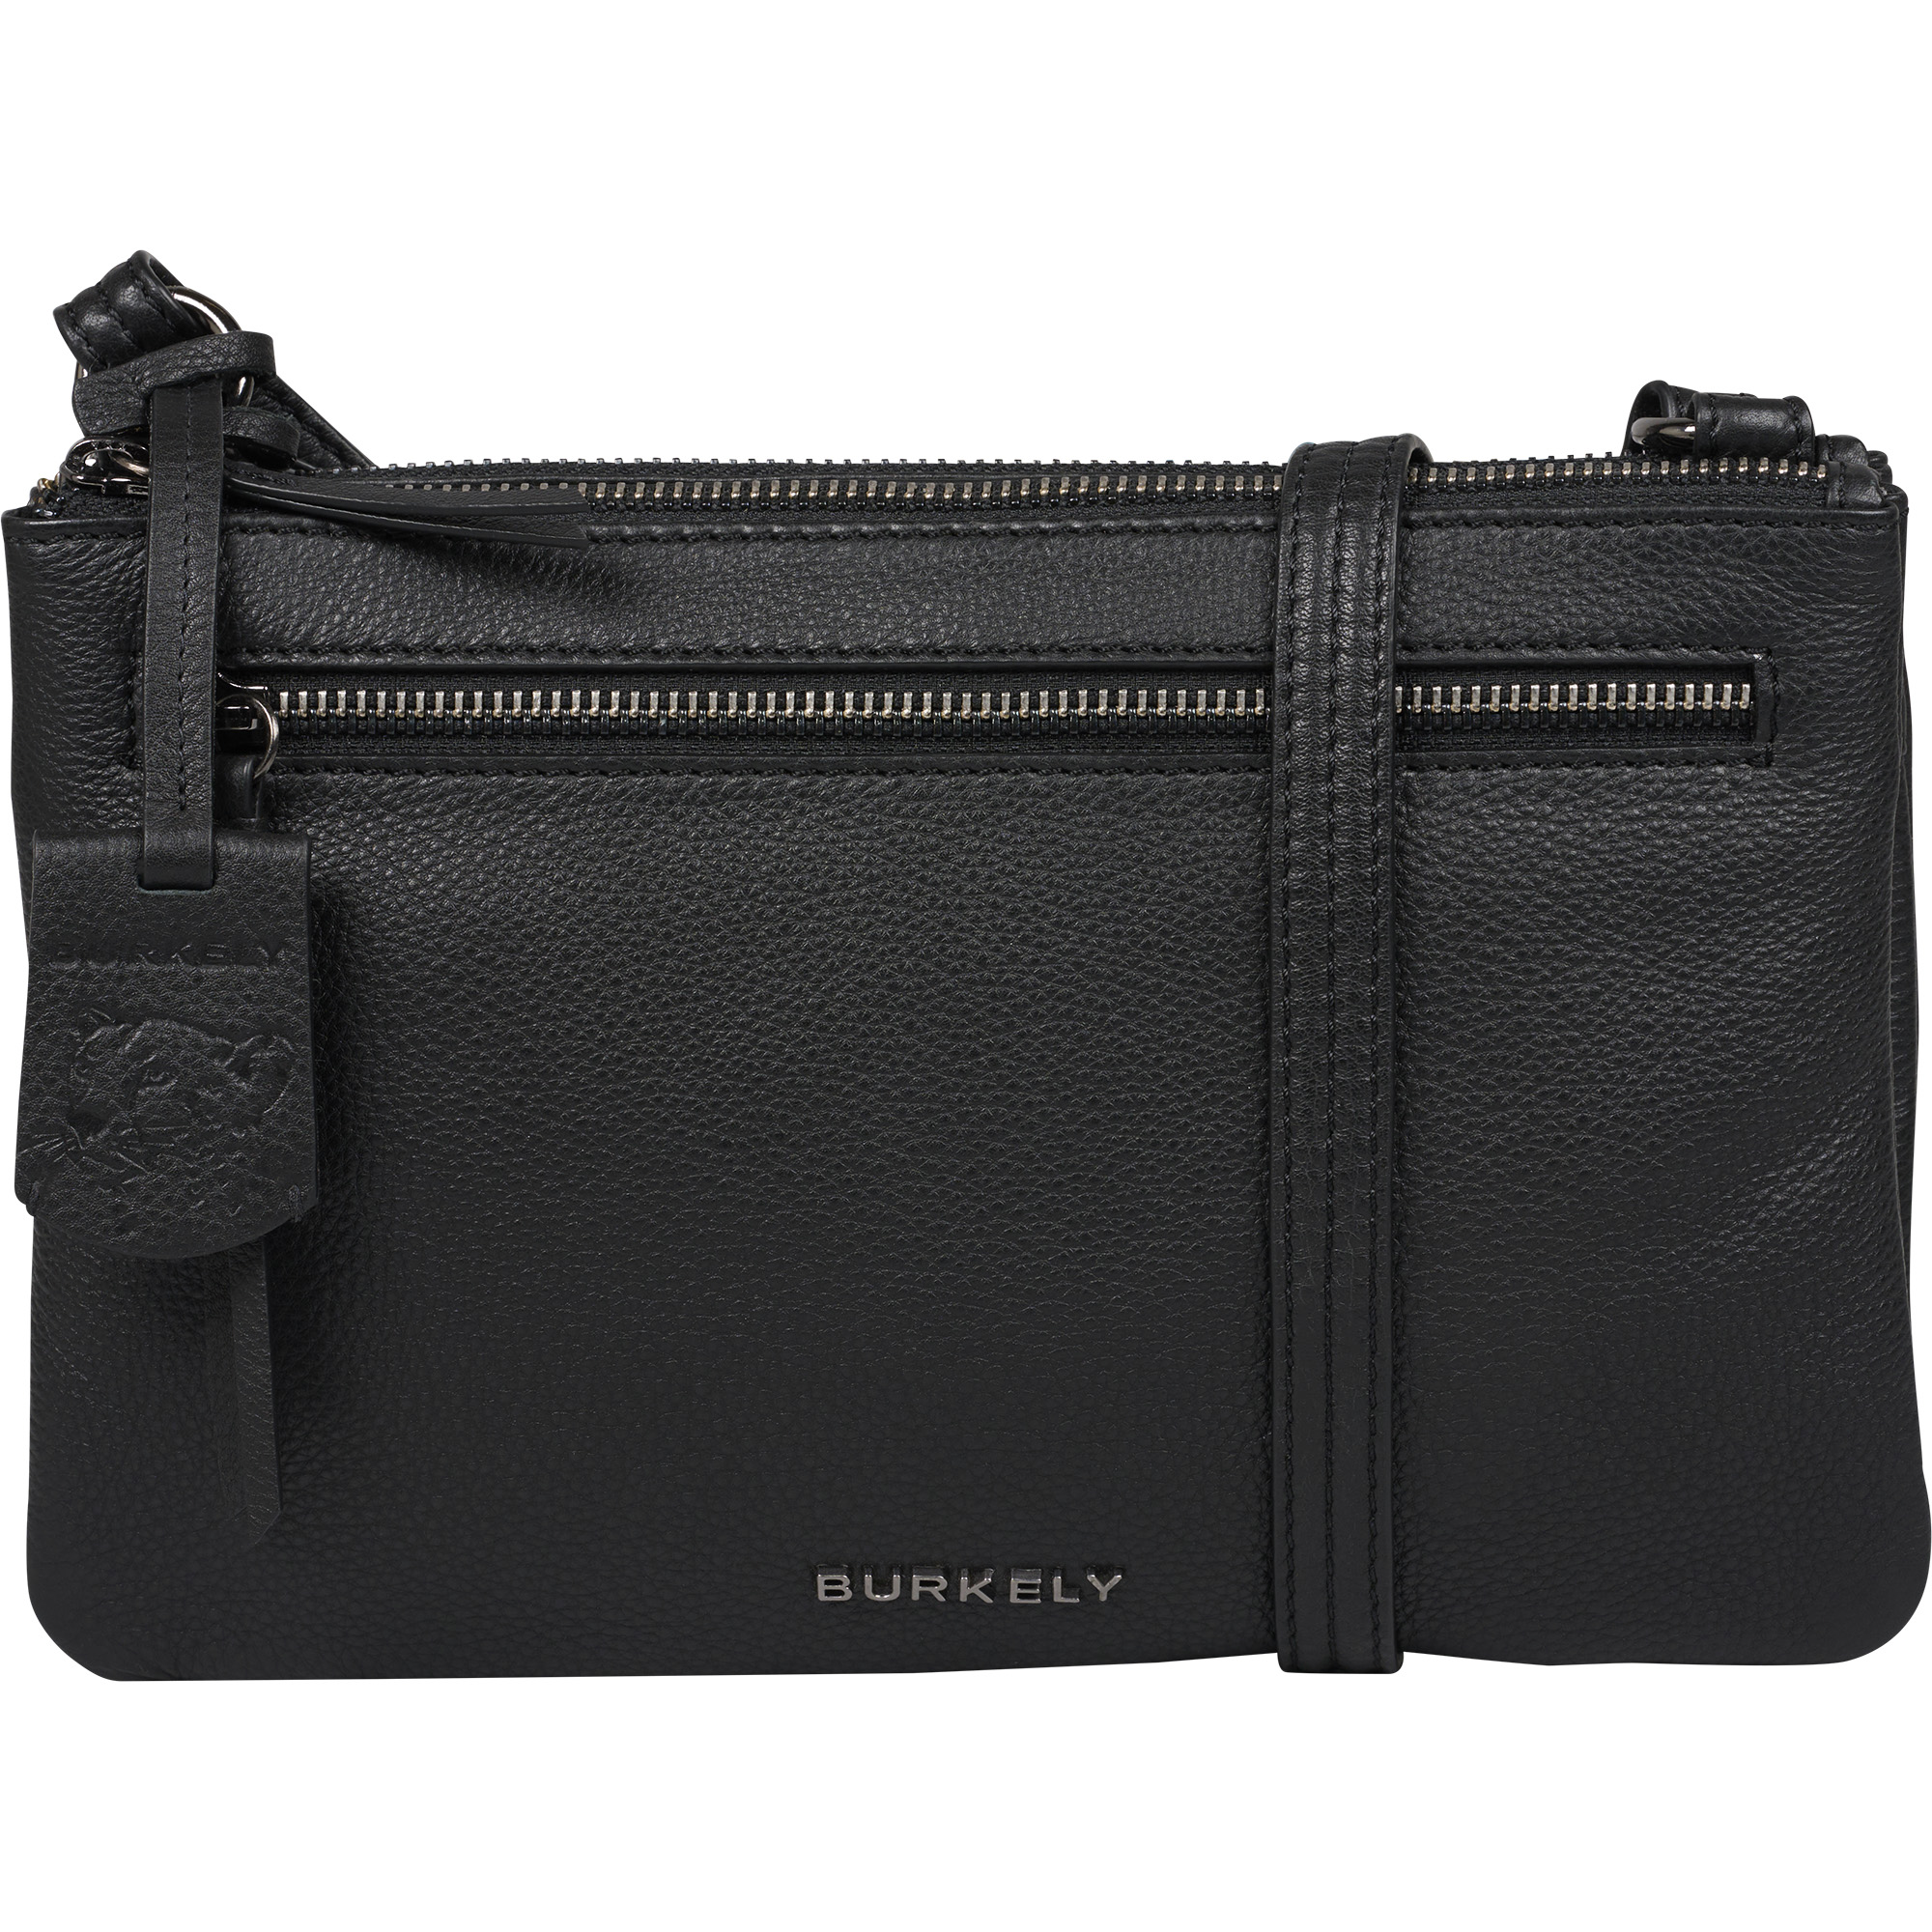 Burkely 1000716 Double Pocket Bag 64.10 Black